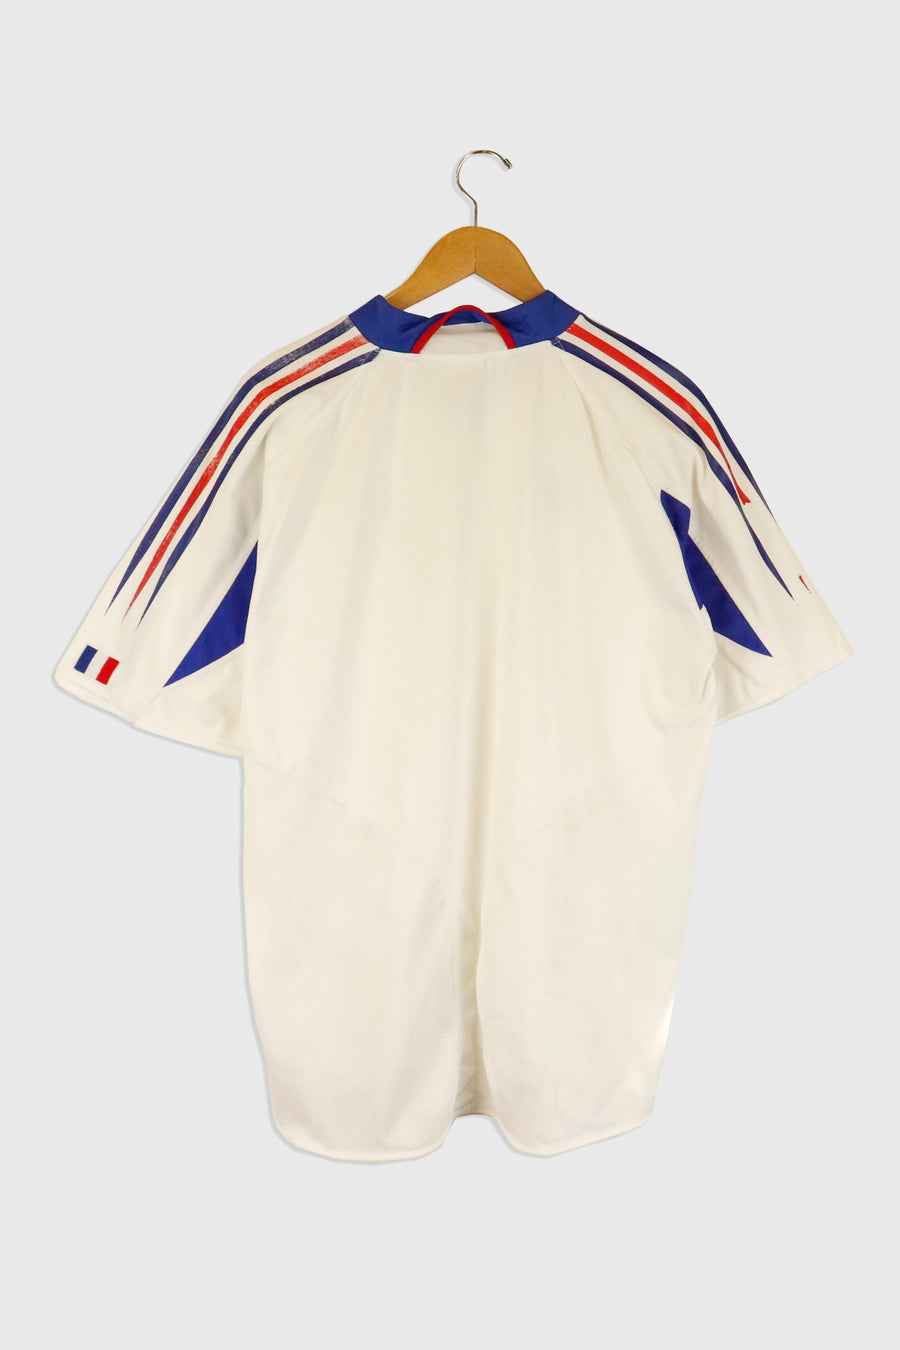 Vintage Adidas F F F Jersey Sz XL